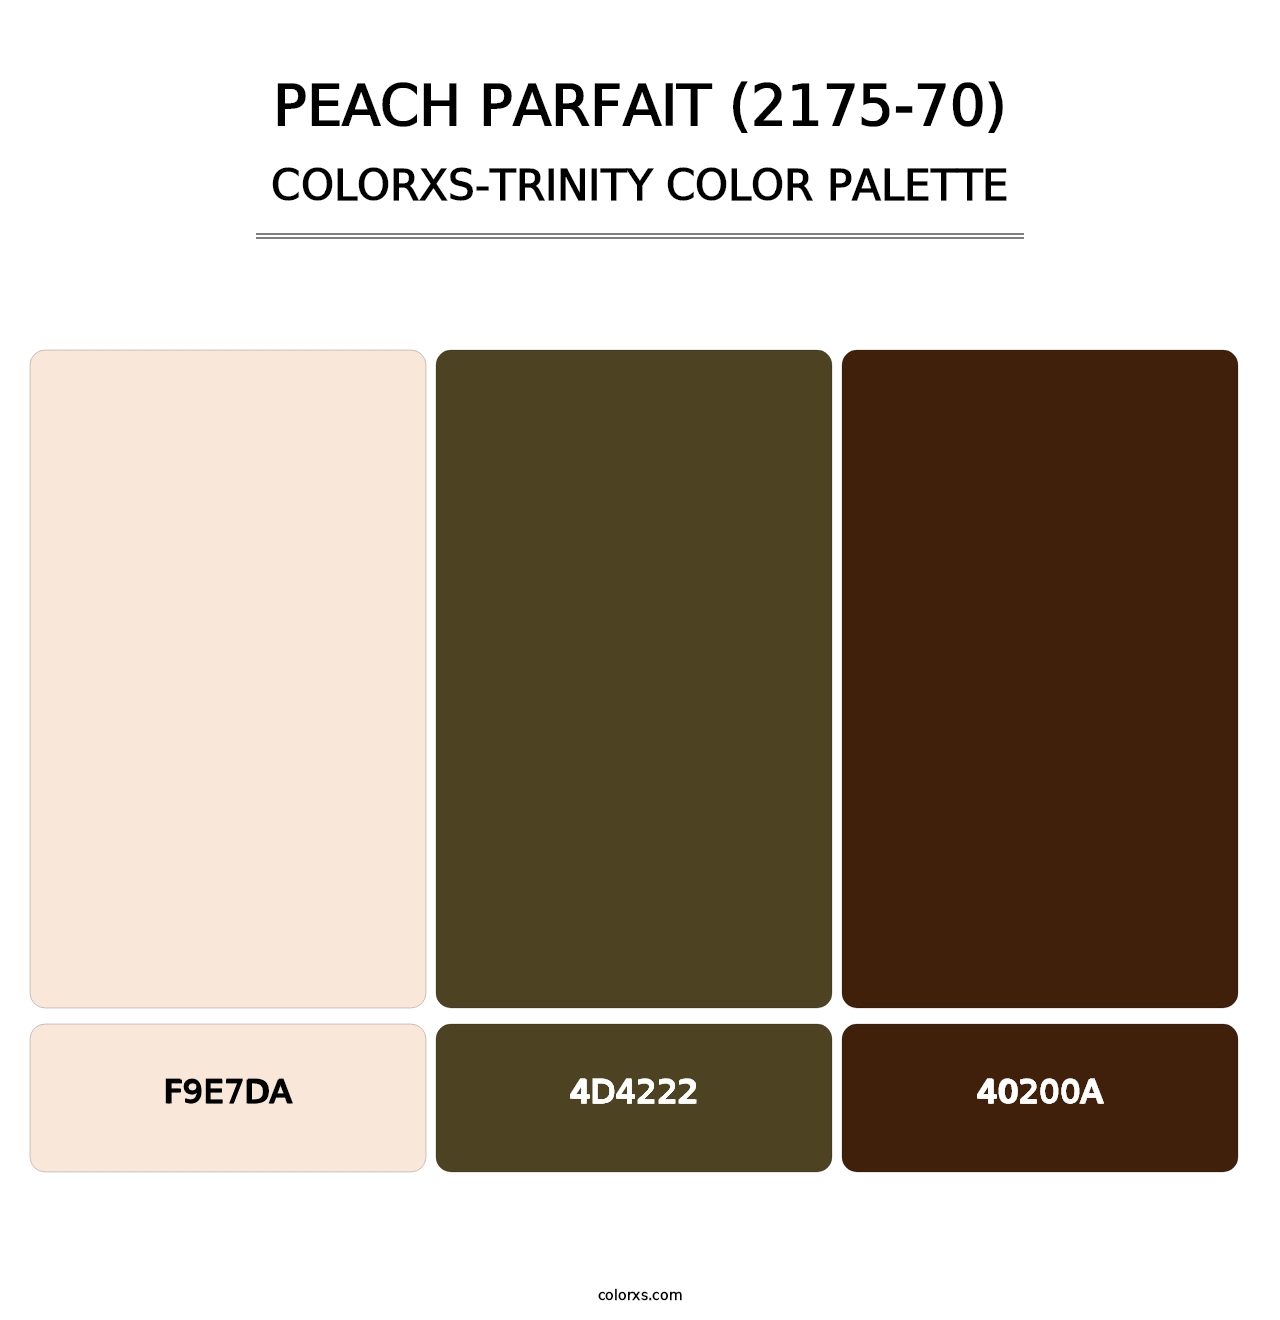 Peach Parfait (2175-70) - Colorxs Trinity Palette